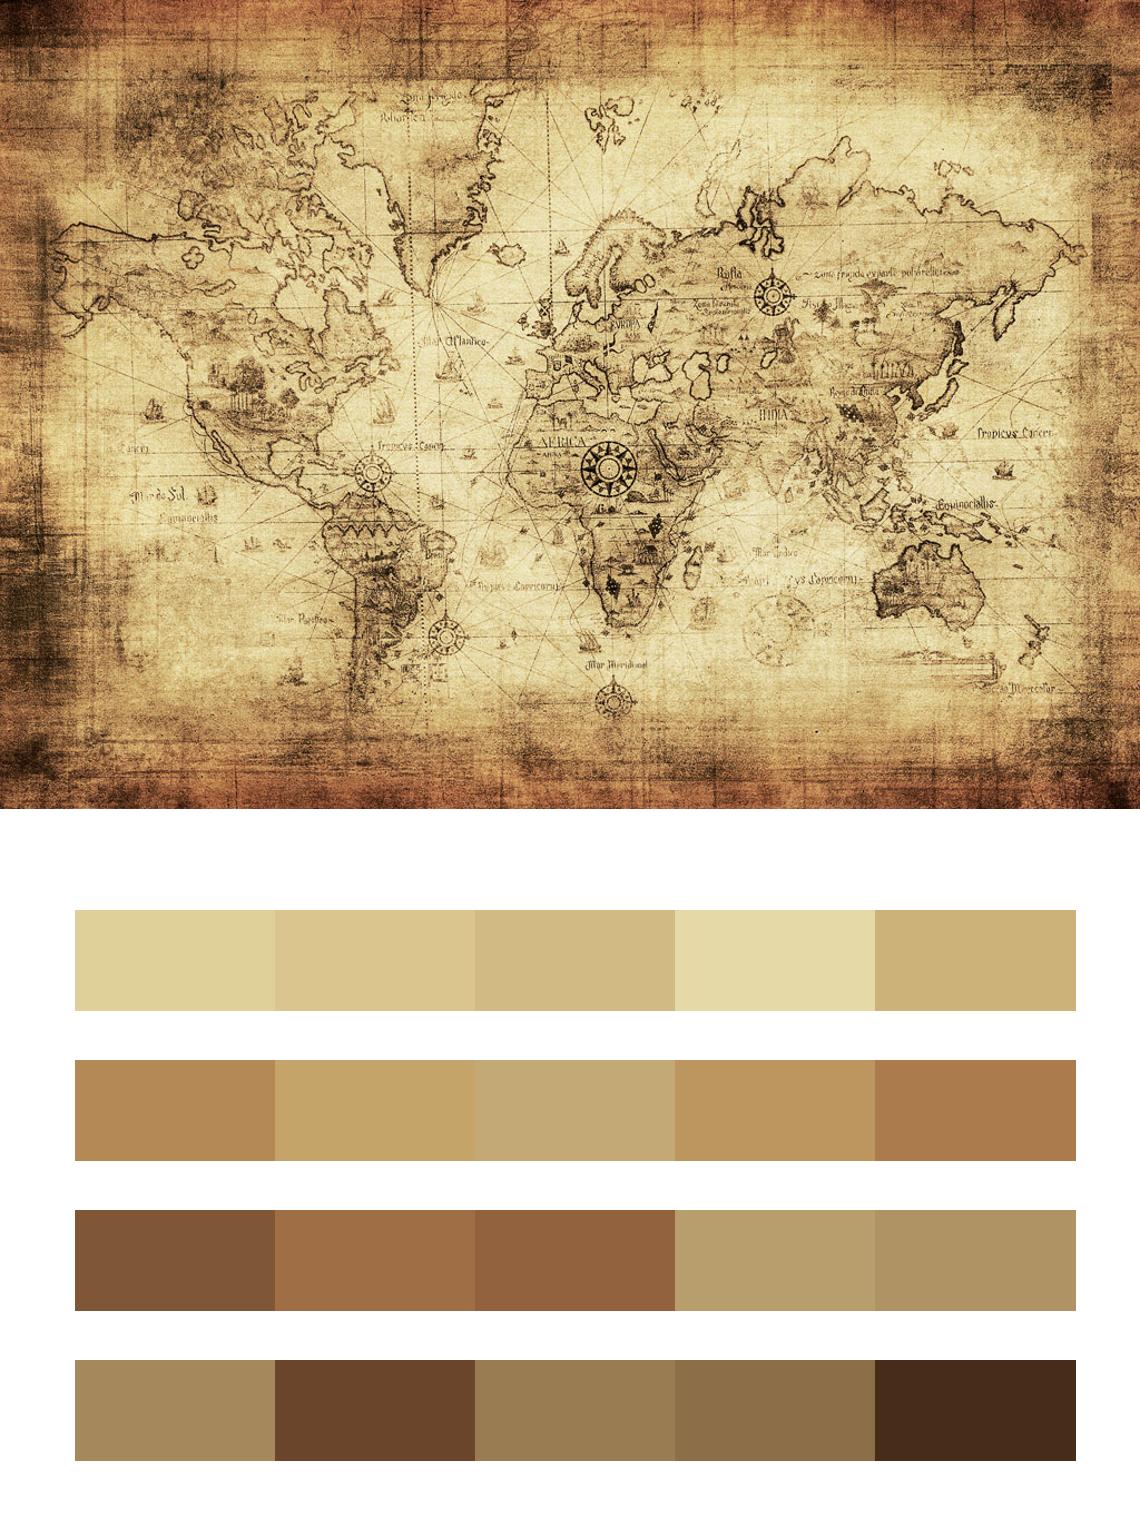 Карта материков цвета